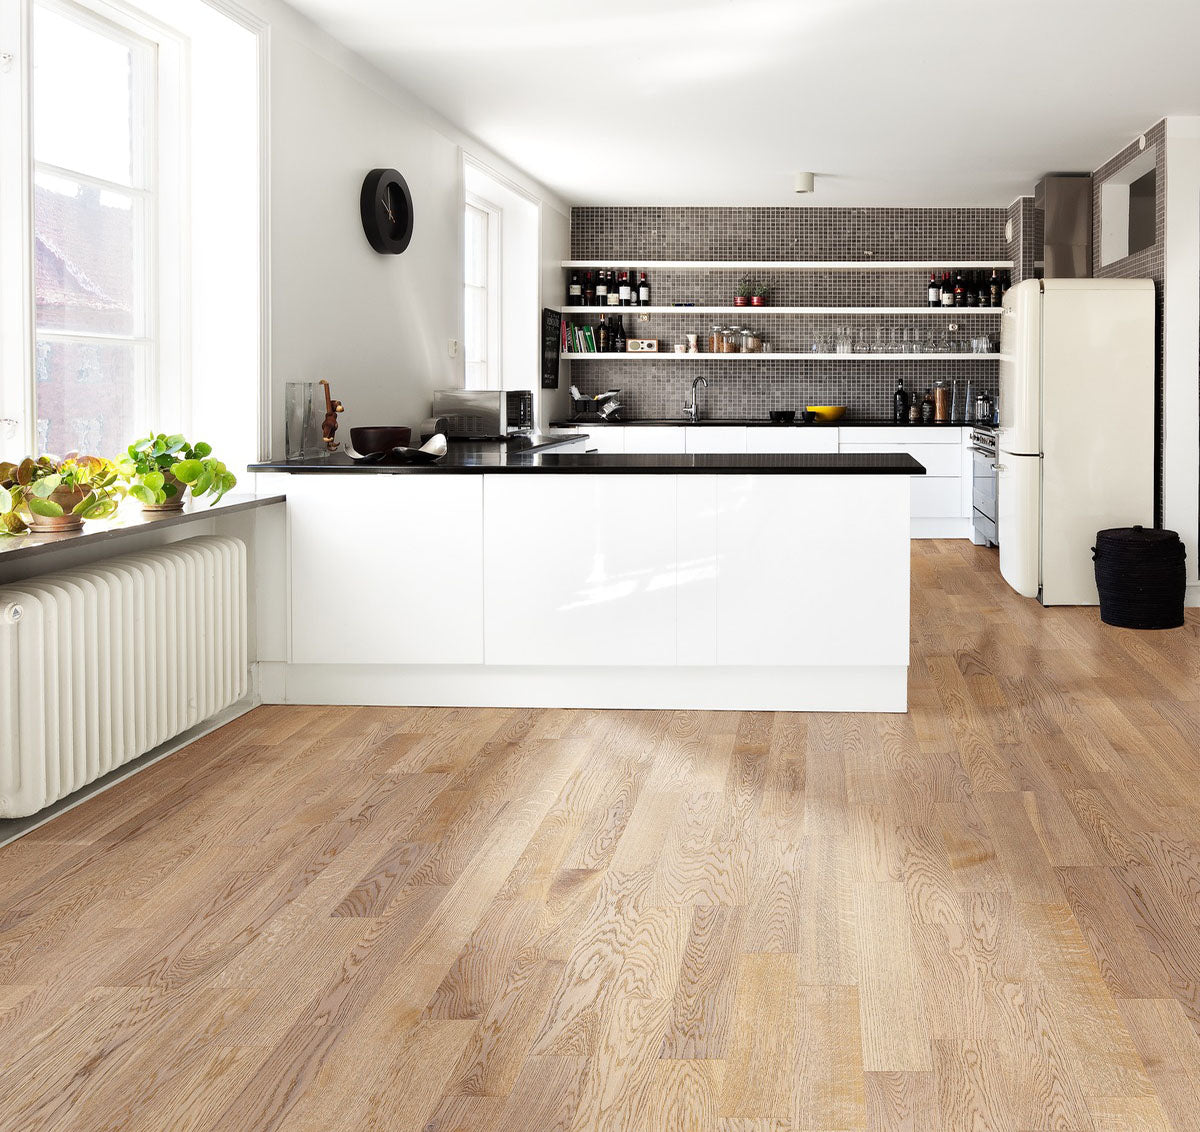 Engineered hardwood flooring from Sweden.